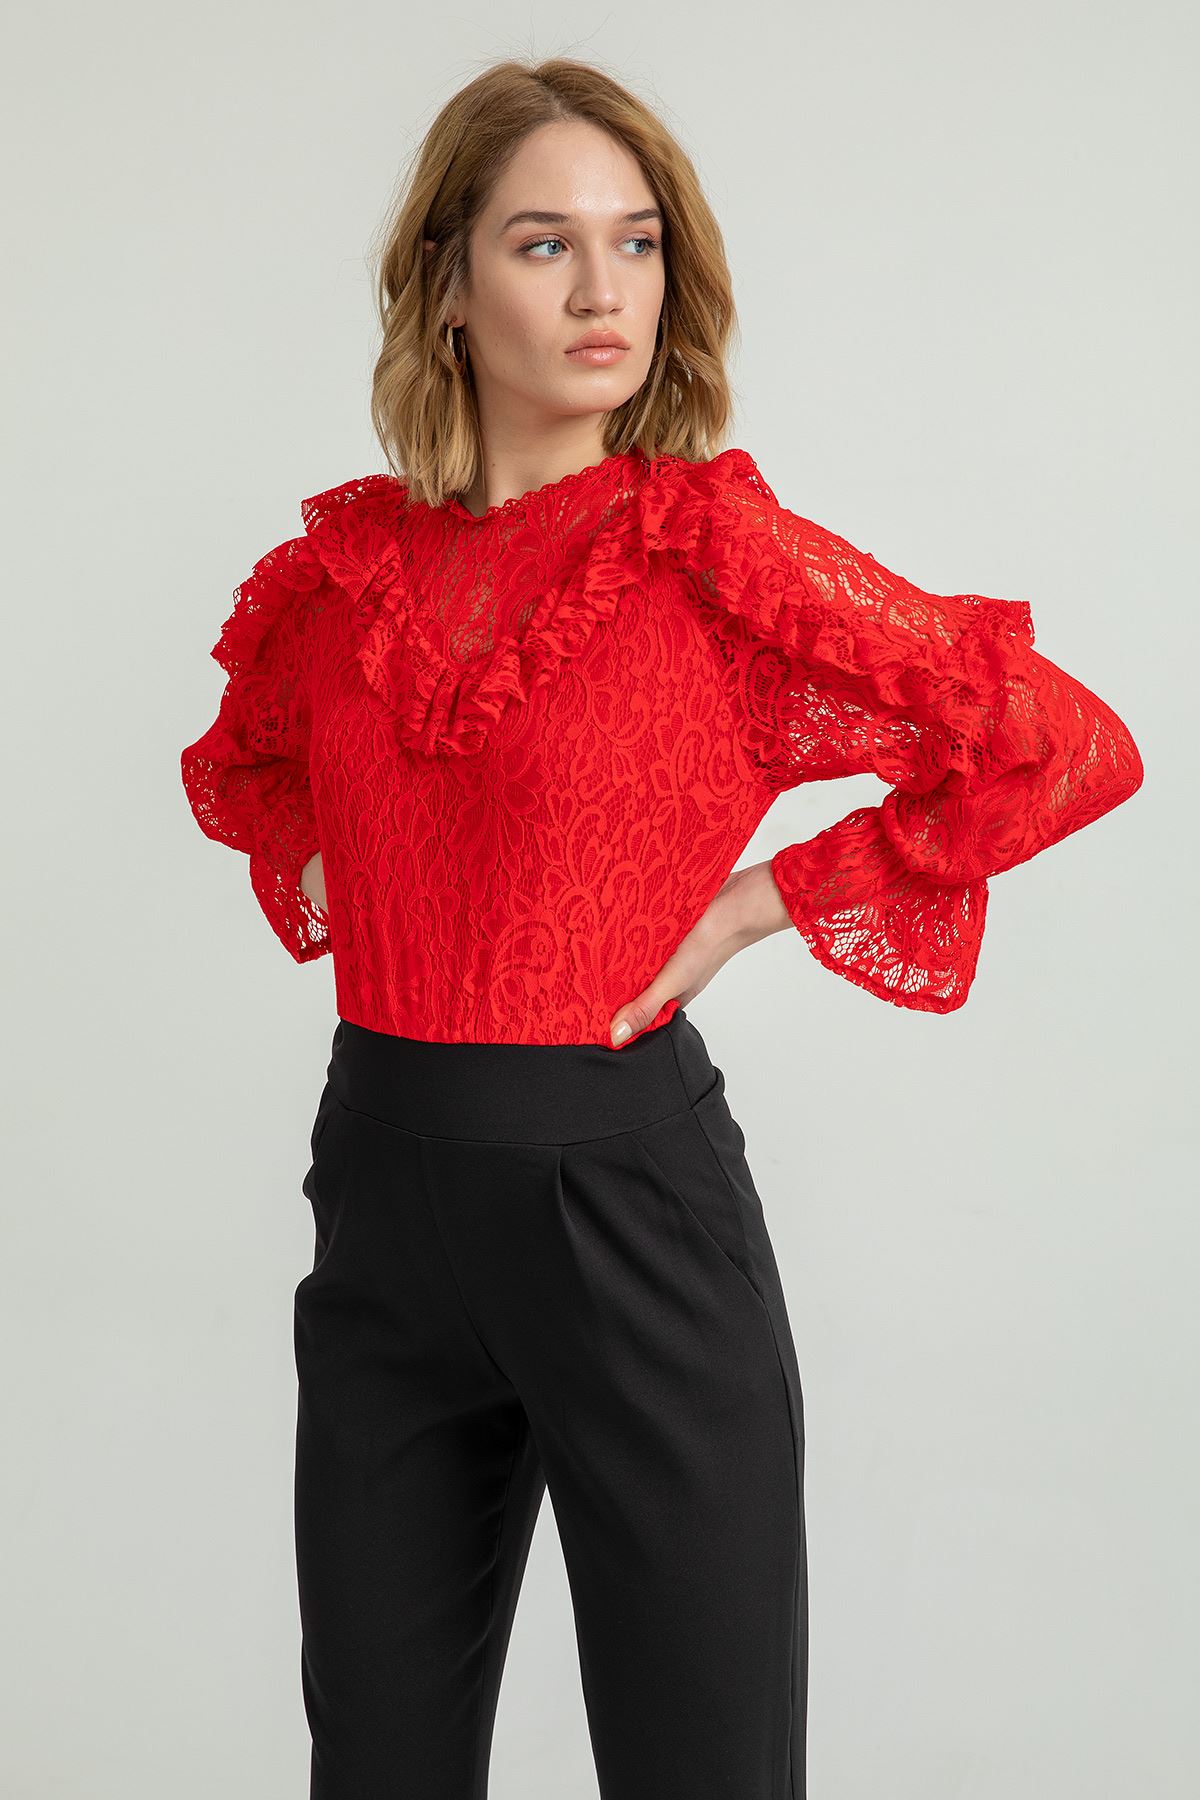 Кружевная ткань с круглым вырезом Женская блузка воланами - Kрасный